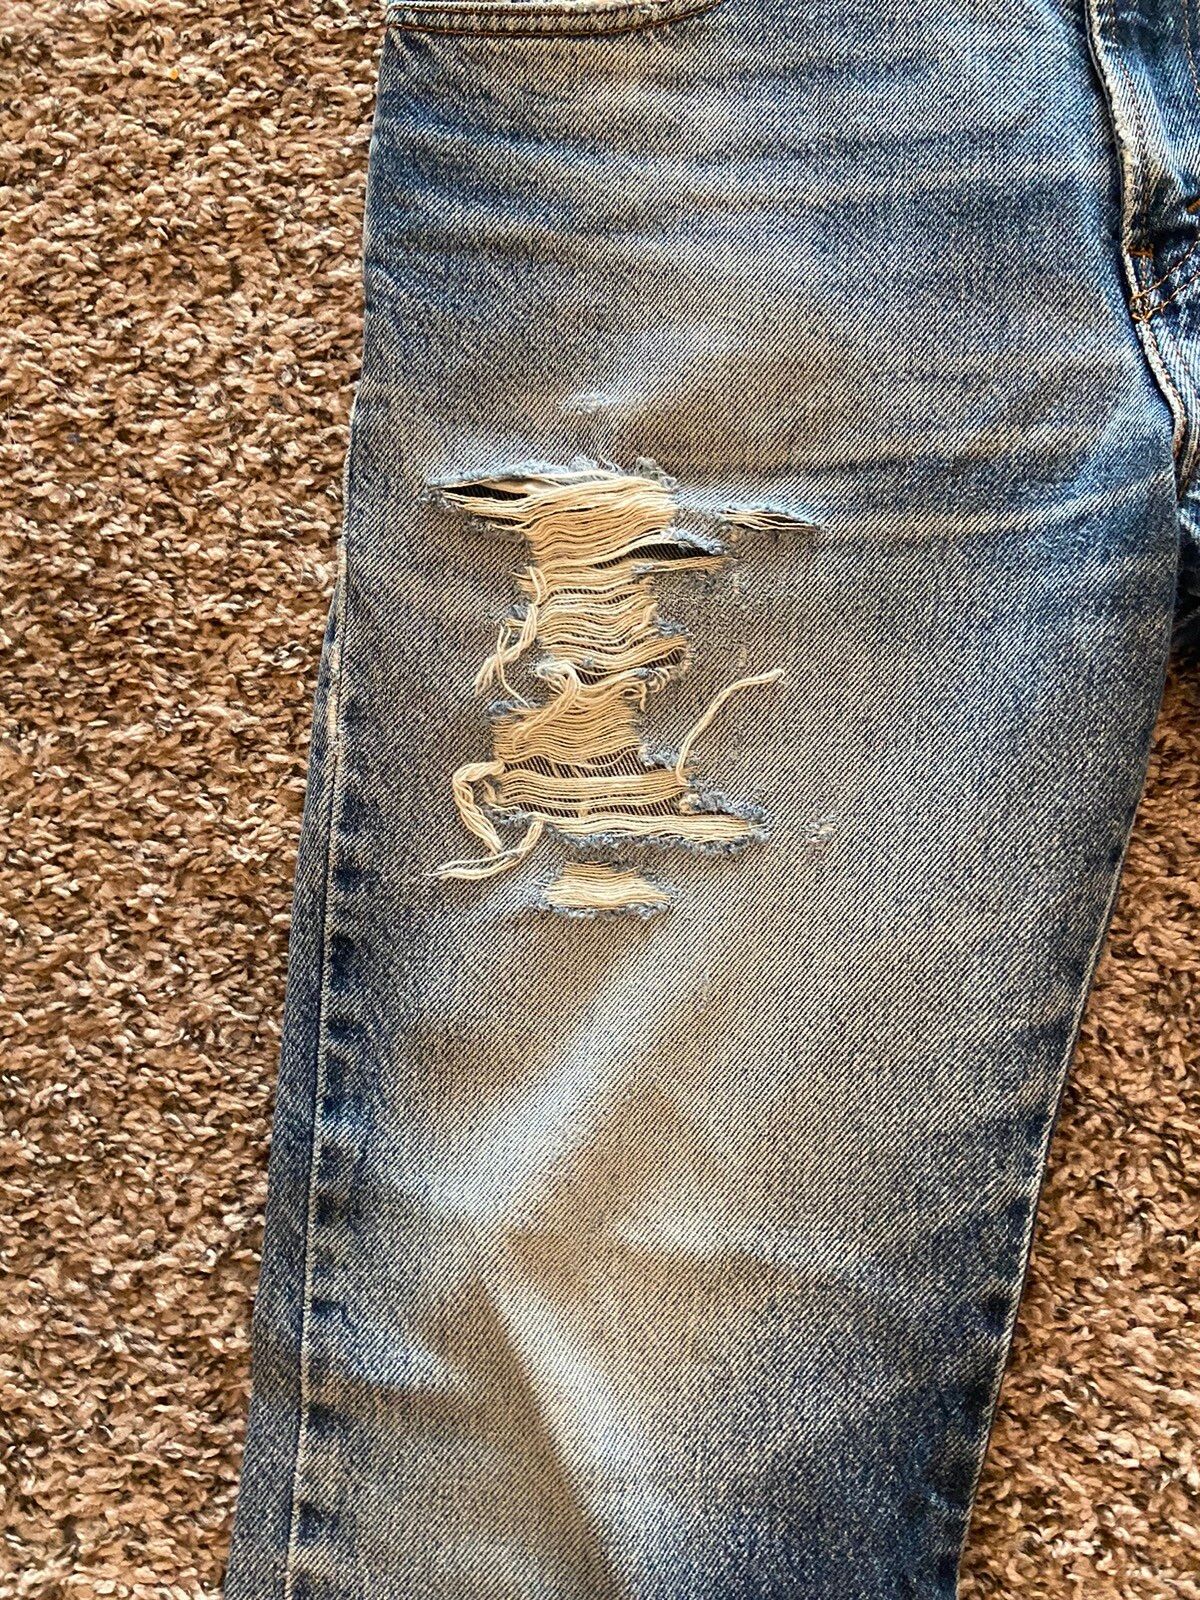 Vintage Vintage Levi’s 505 Distressed Denim Jeans Size US 30 / EU 46 - 3 Thumbnail